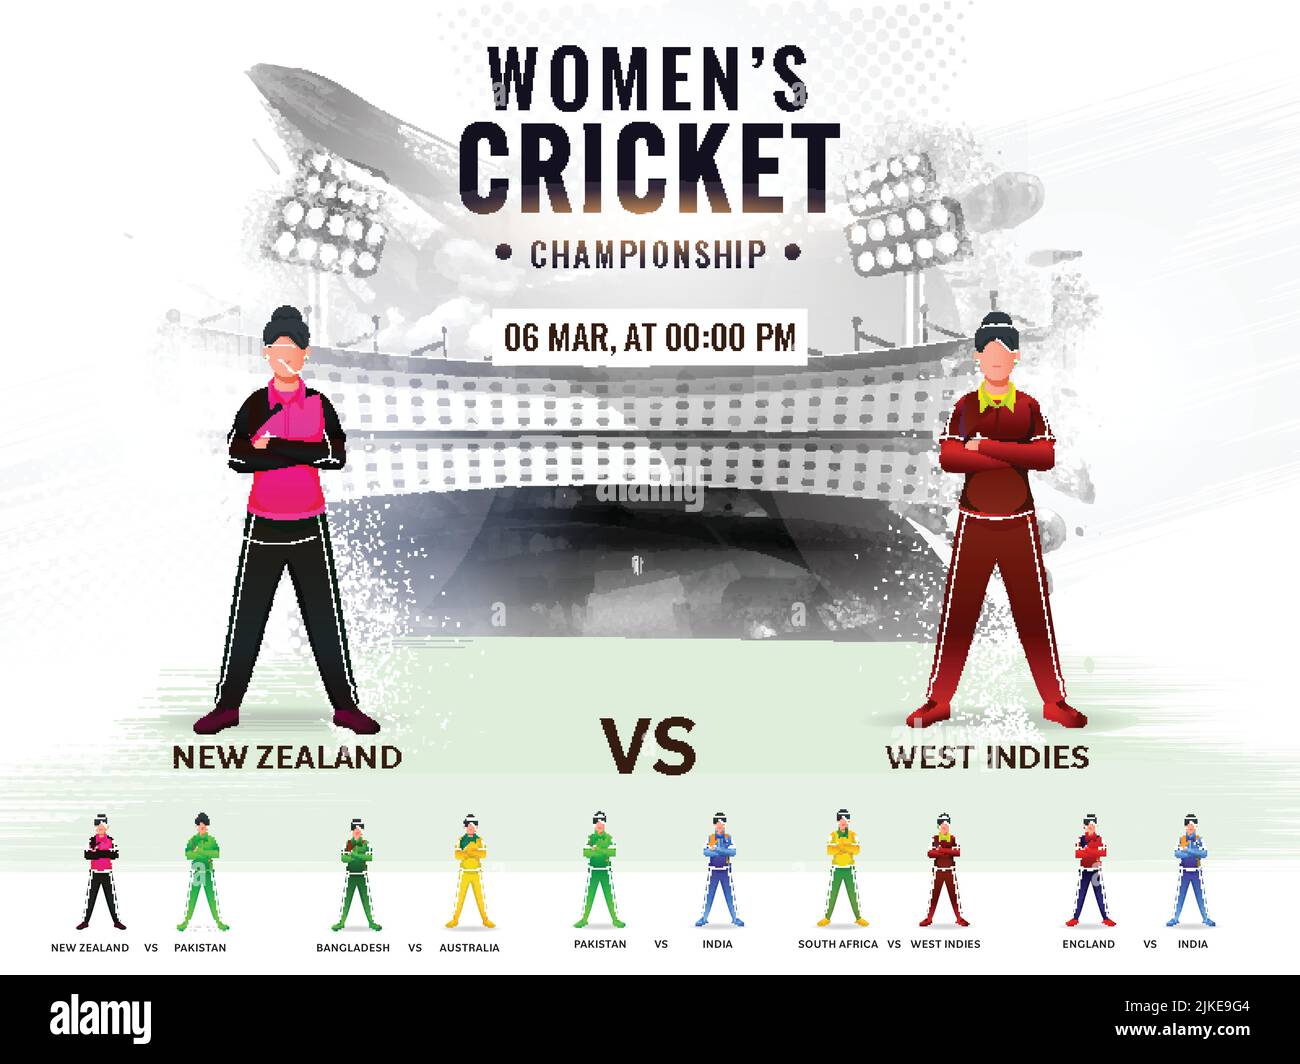 Horaire des matchs de cricket des femmes entre la Nouvelle-Zélande et les Antilles avec d'autres joueurs des pays participants sur le parcours du stade Abstract Grunge. Illustration de Vecteur